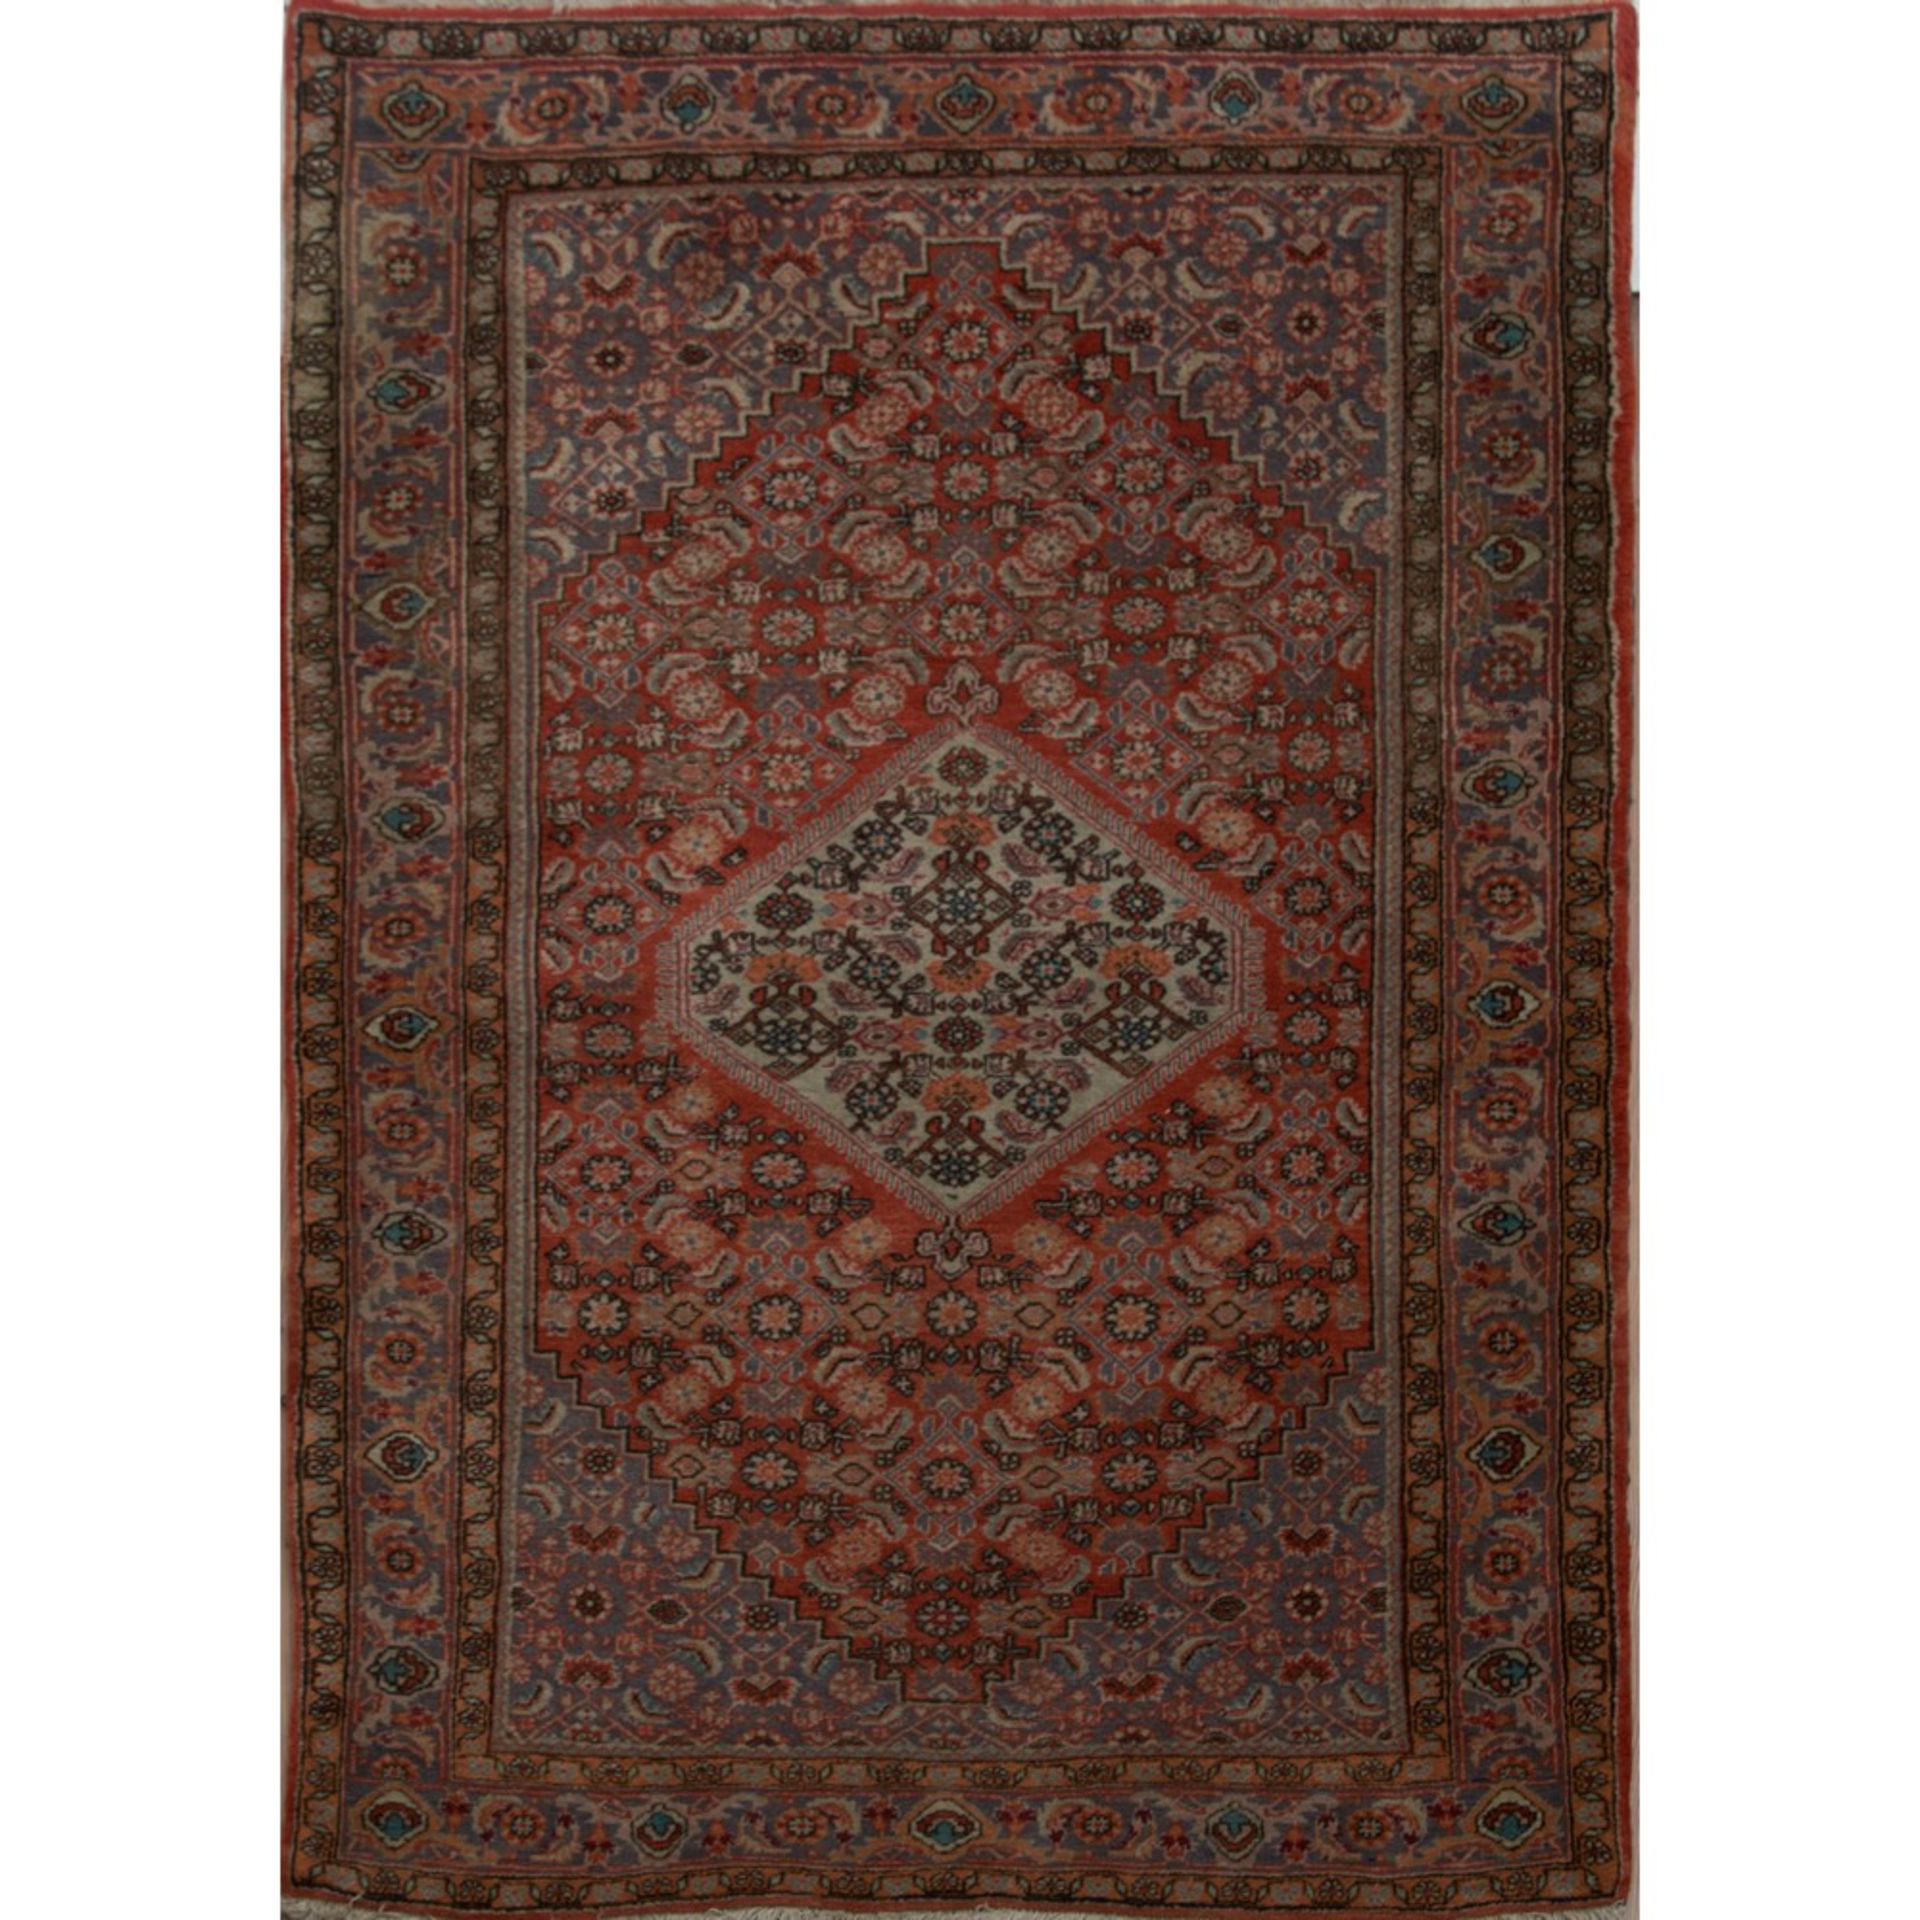 TAPPETO BIDJAR trama ed ordito in cotone, vello in lana. Persia XX secolo - cm 170 x 112